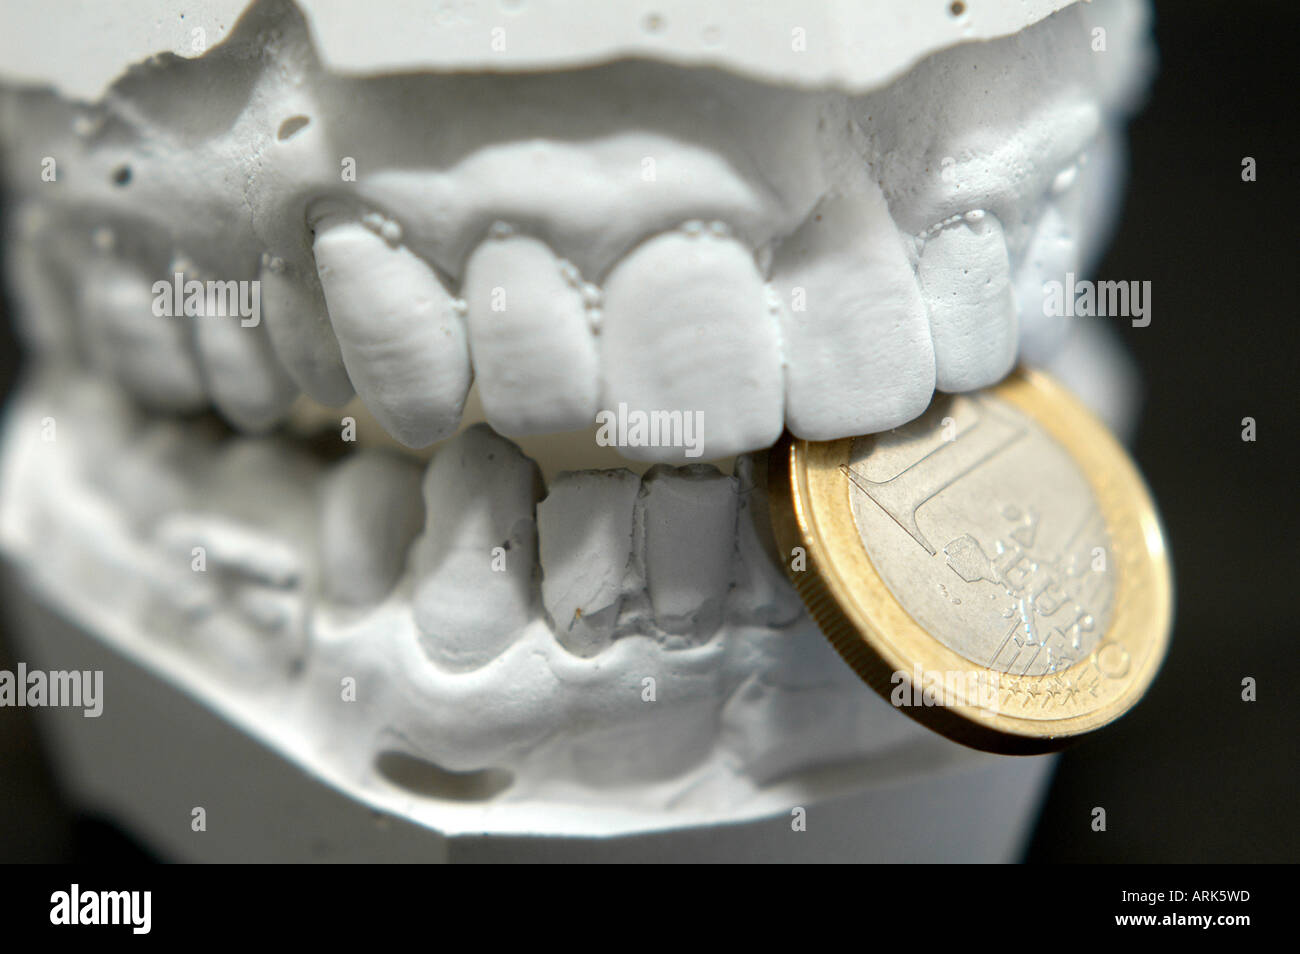 Symbolische Foto: Kinnbacken Modell aus Gips mit ein-Euro-Münze. Kosten für Zahnersatz, Euro-Währung, Kosten für zahnärztliche trea Stockfoto